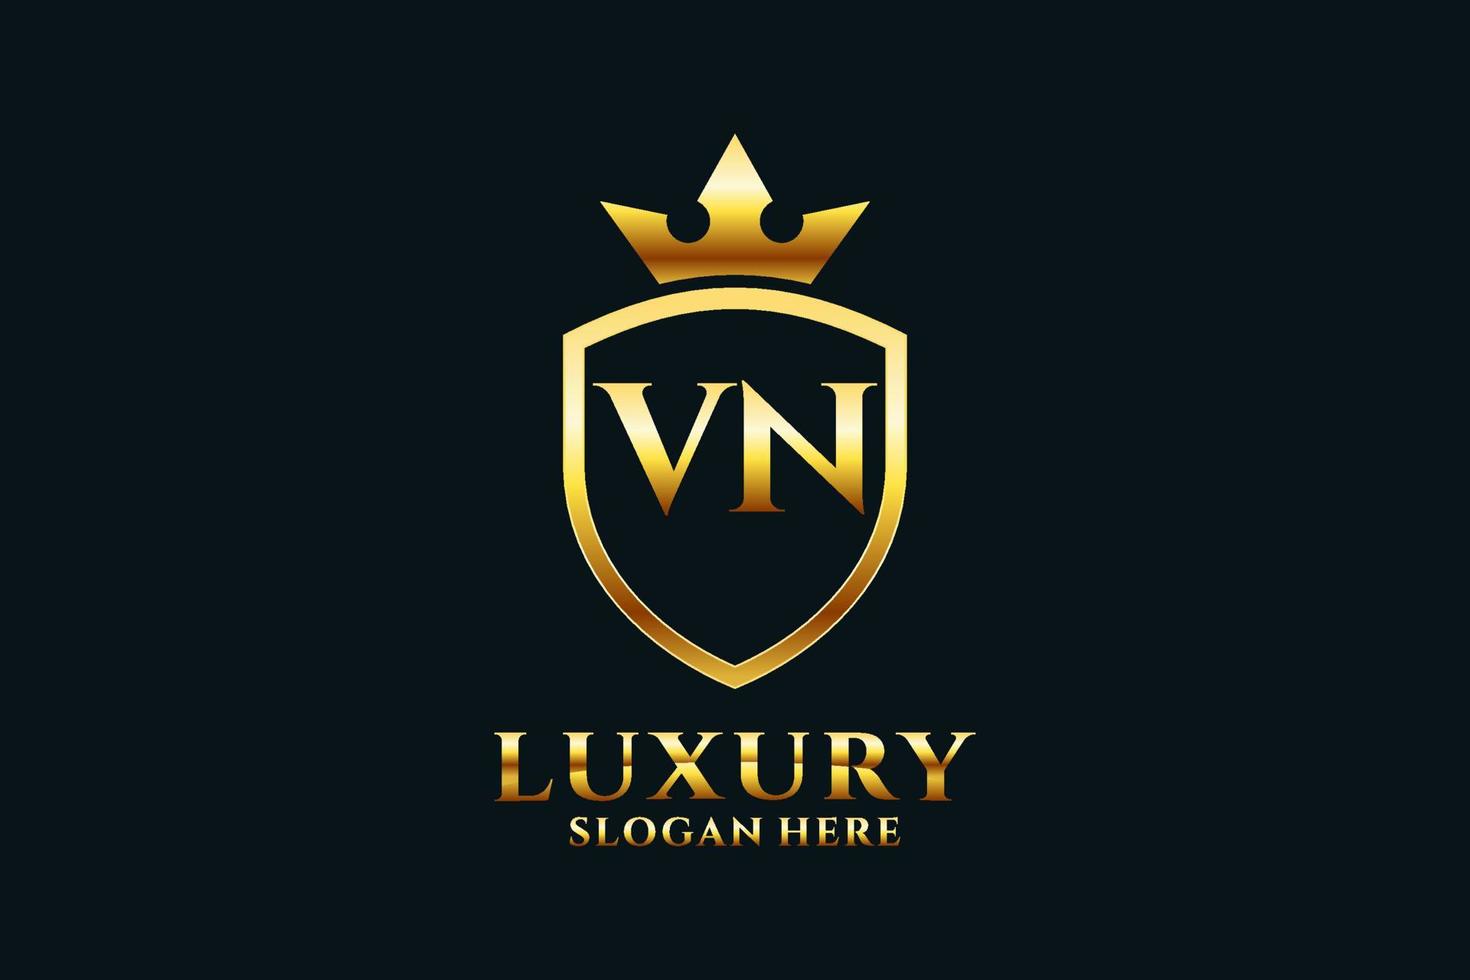 Initial vn elegantes Luxus-Monogramm-Logo oder Abzeichen-Vorlage mit Schriftrollen und Königskrone – perfekt für luxuriöse Branding-Projekte vektor